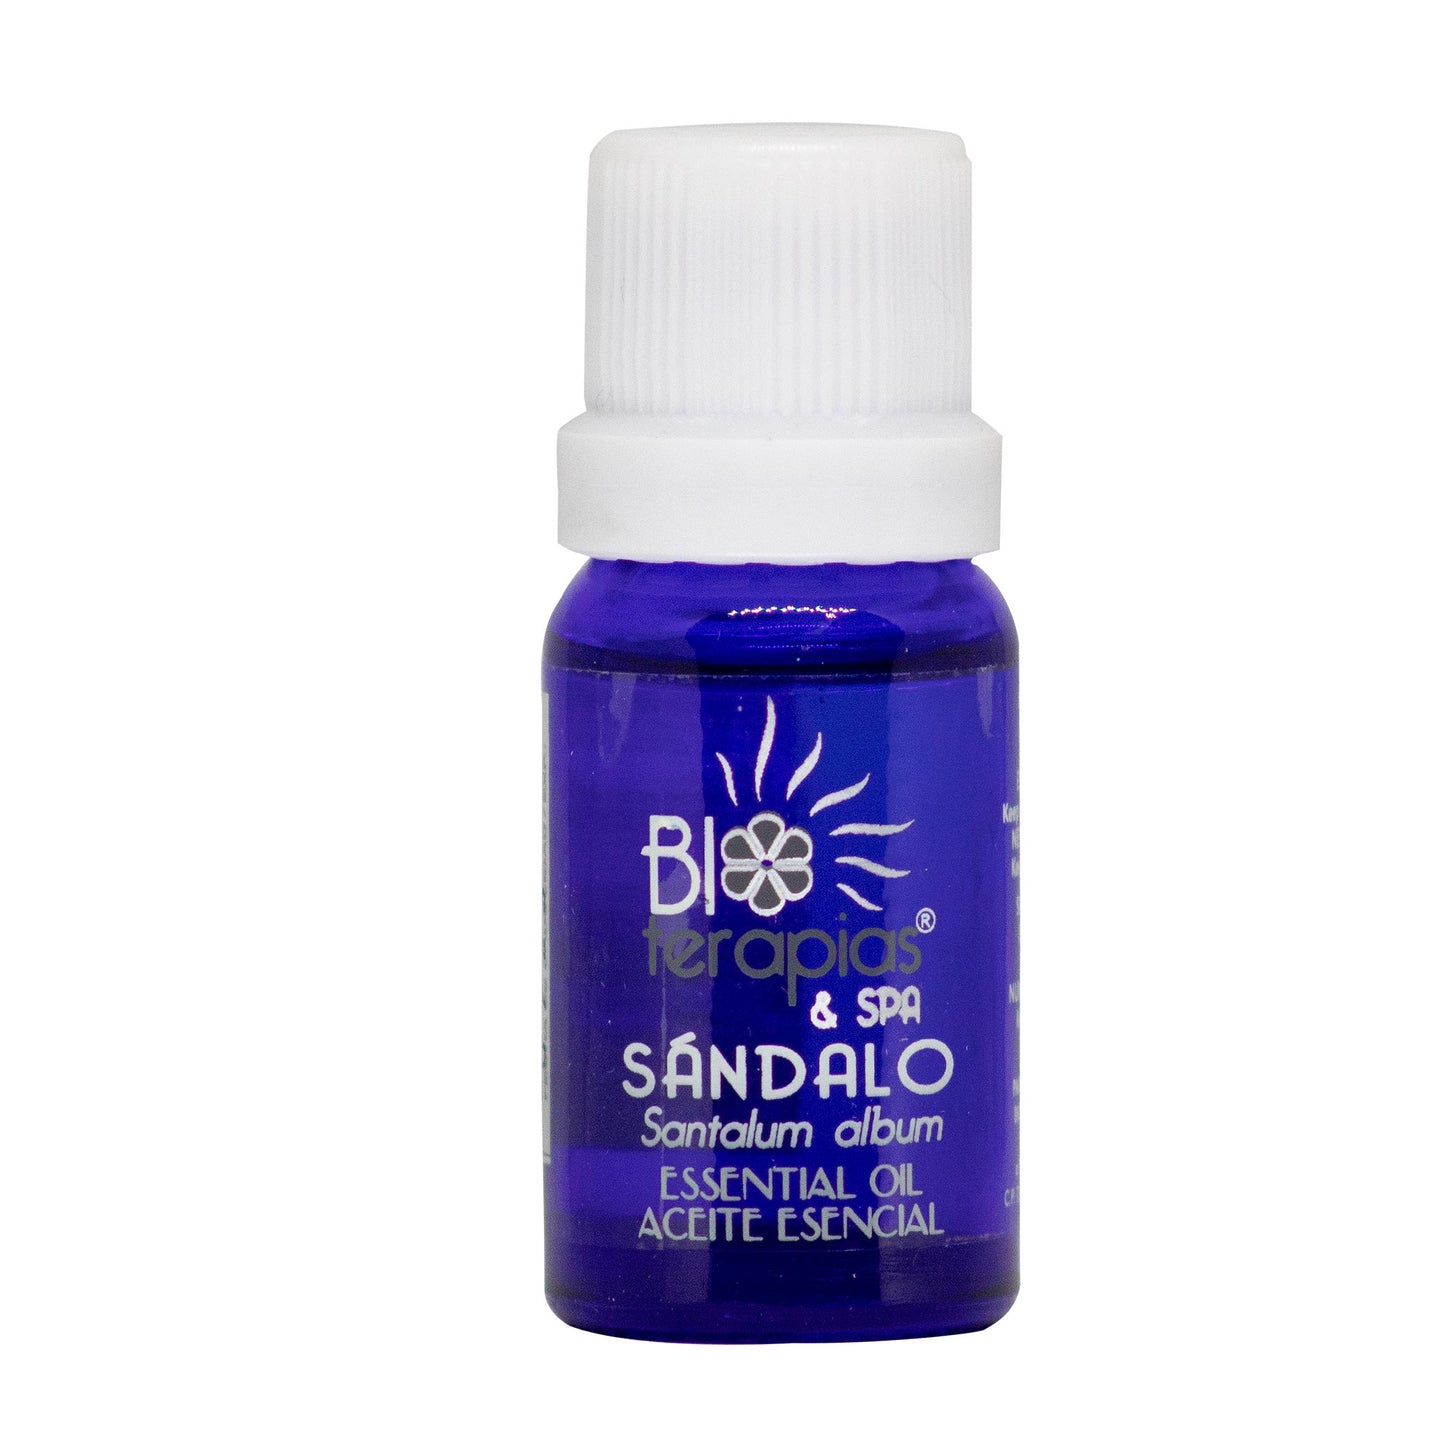 SANDALO ™ aceite esencial 10ml